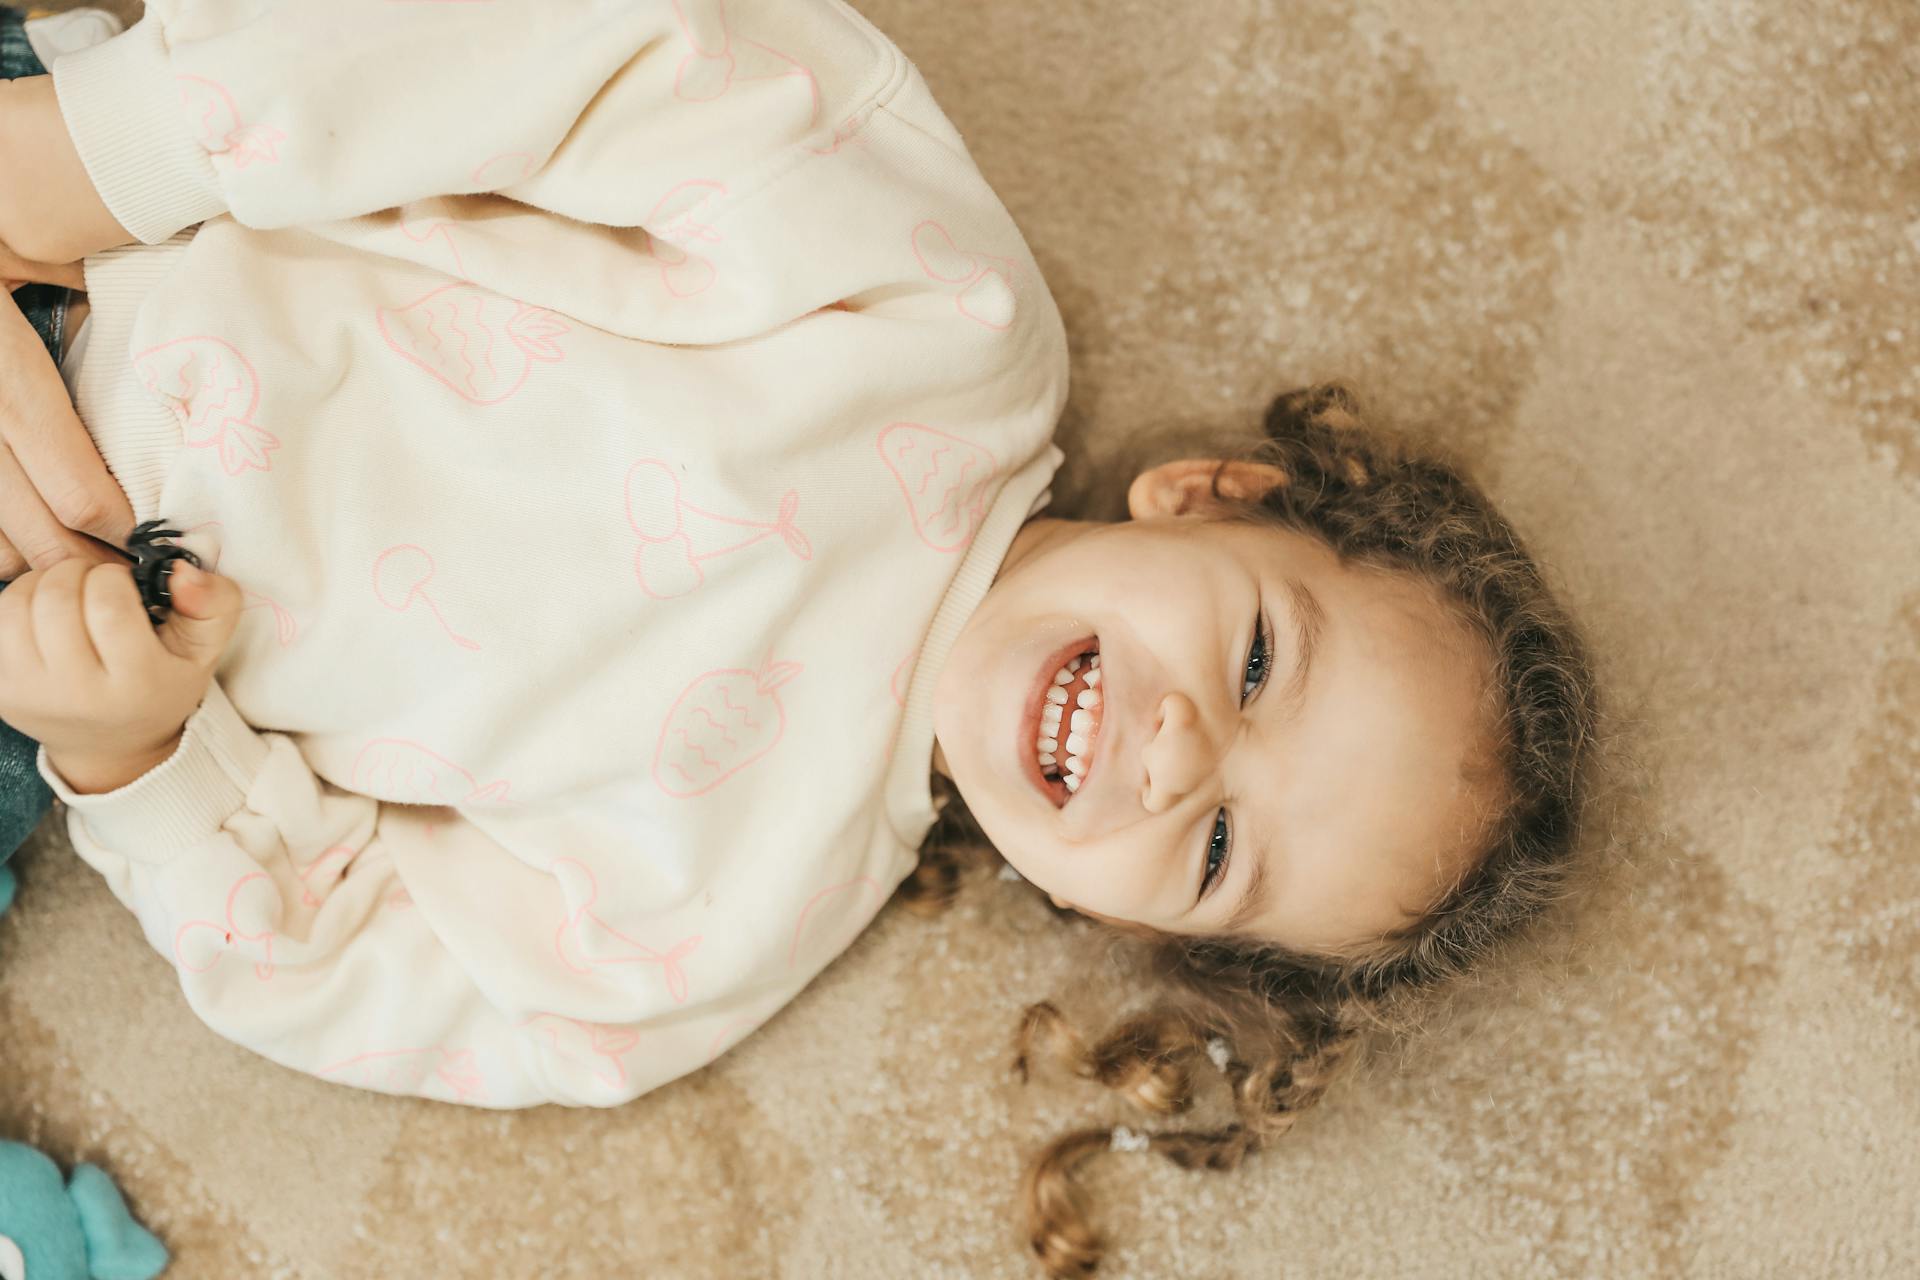 Ein lächelndes Kind, das auf dem Boden liegt | Quelle: Pexels